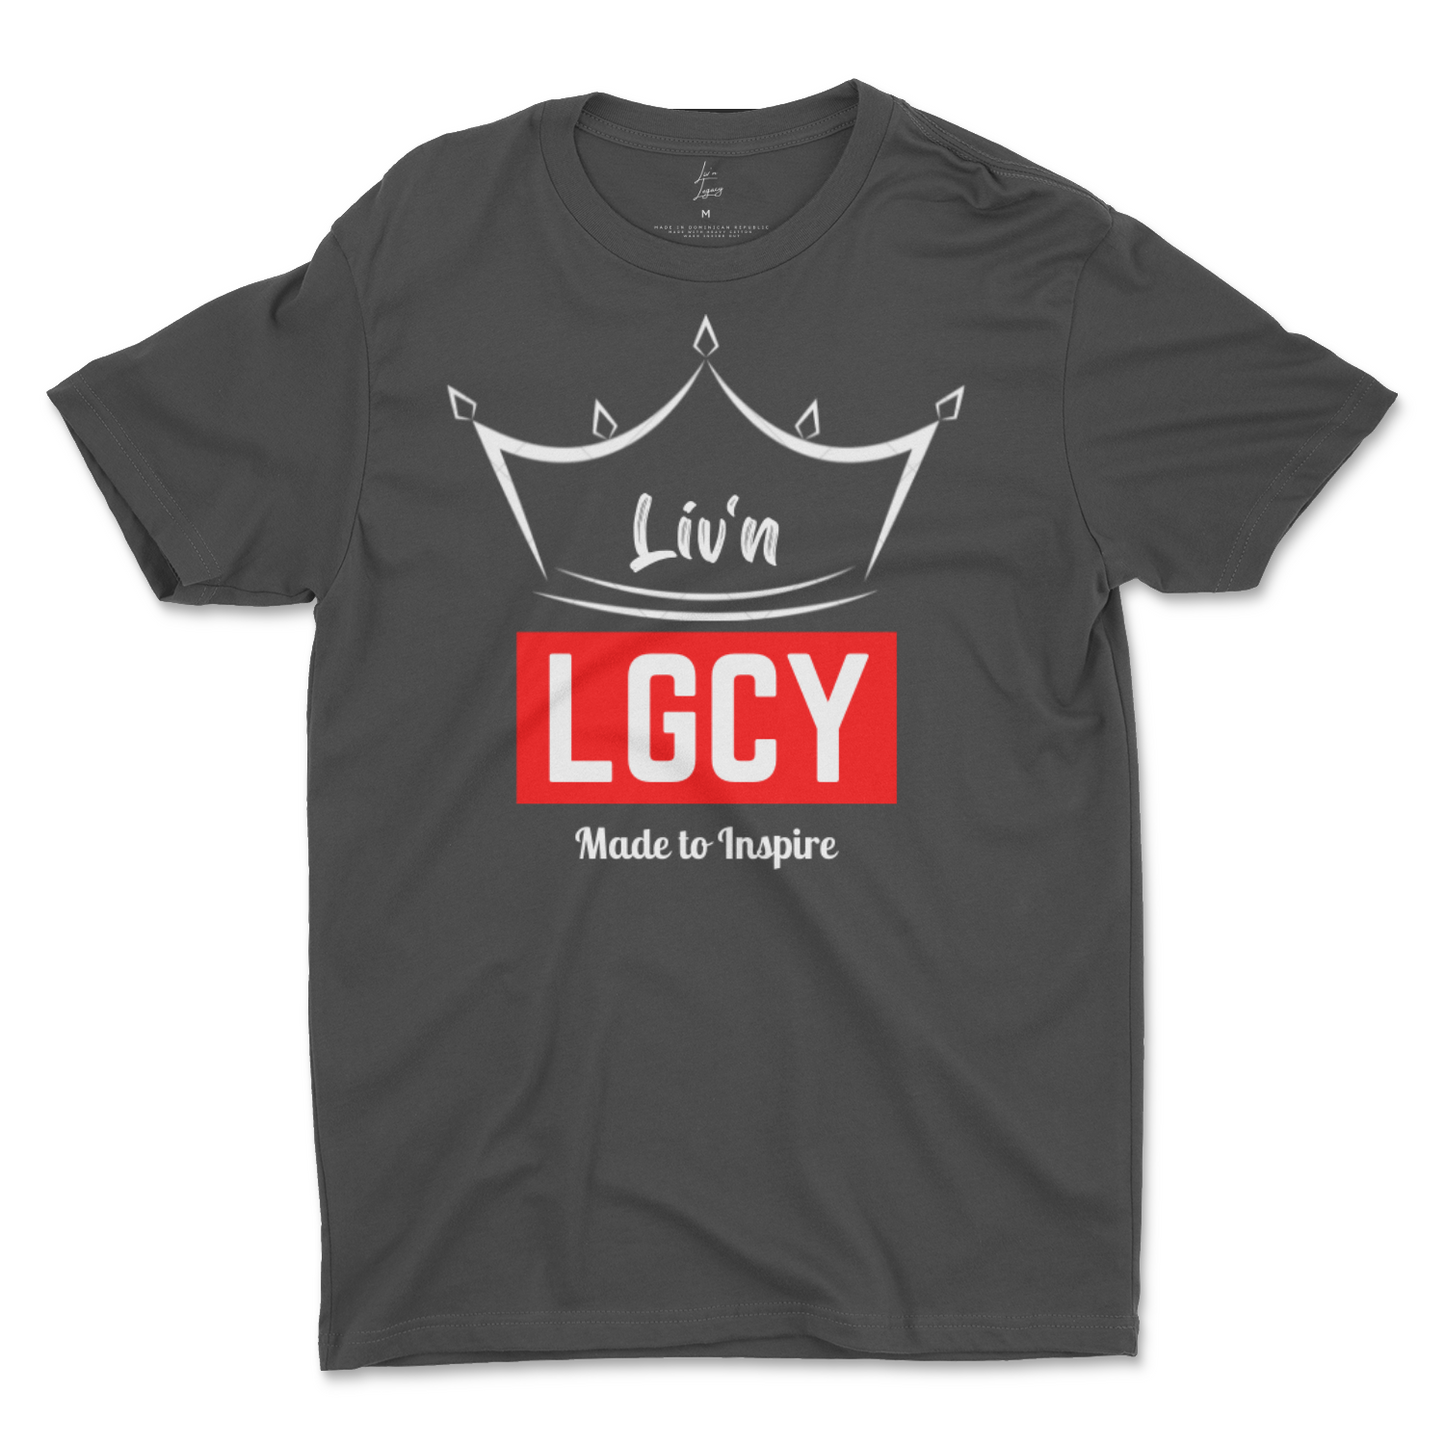 Liv'n LGCY T-Shirt